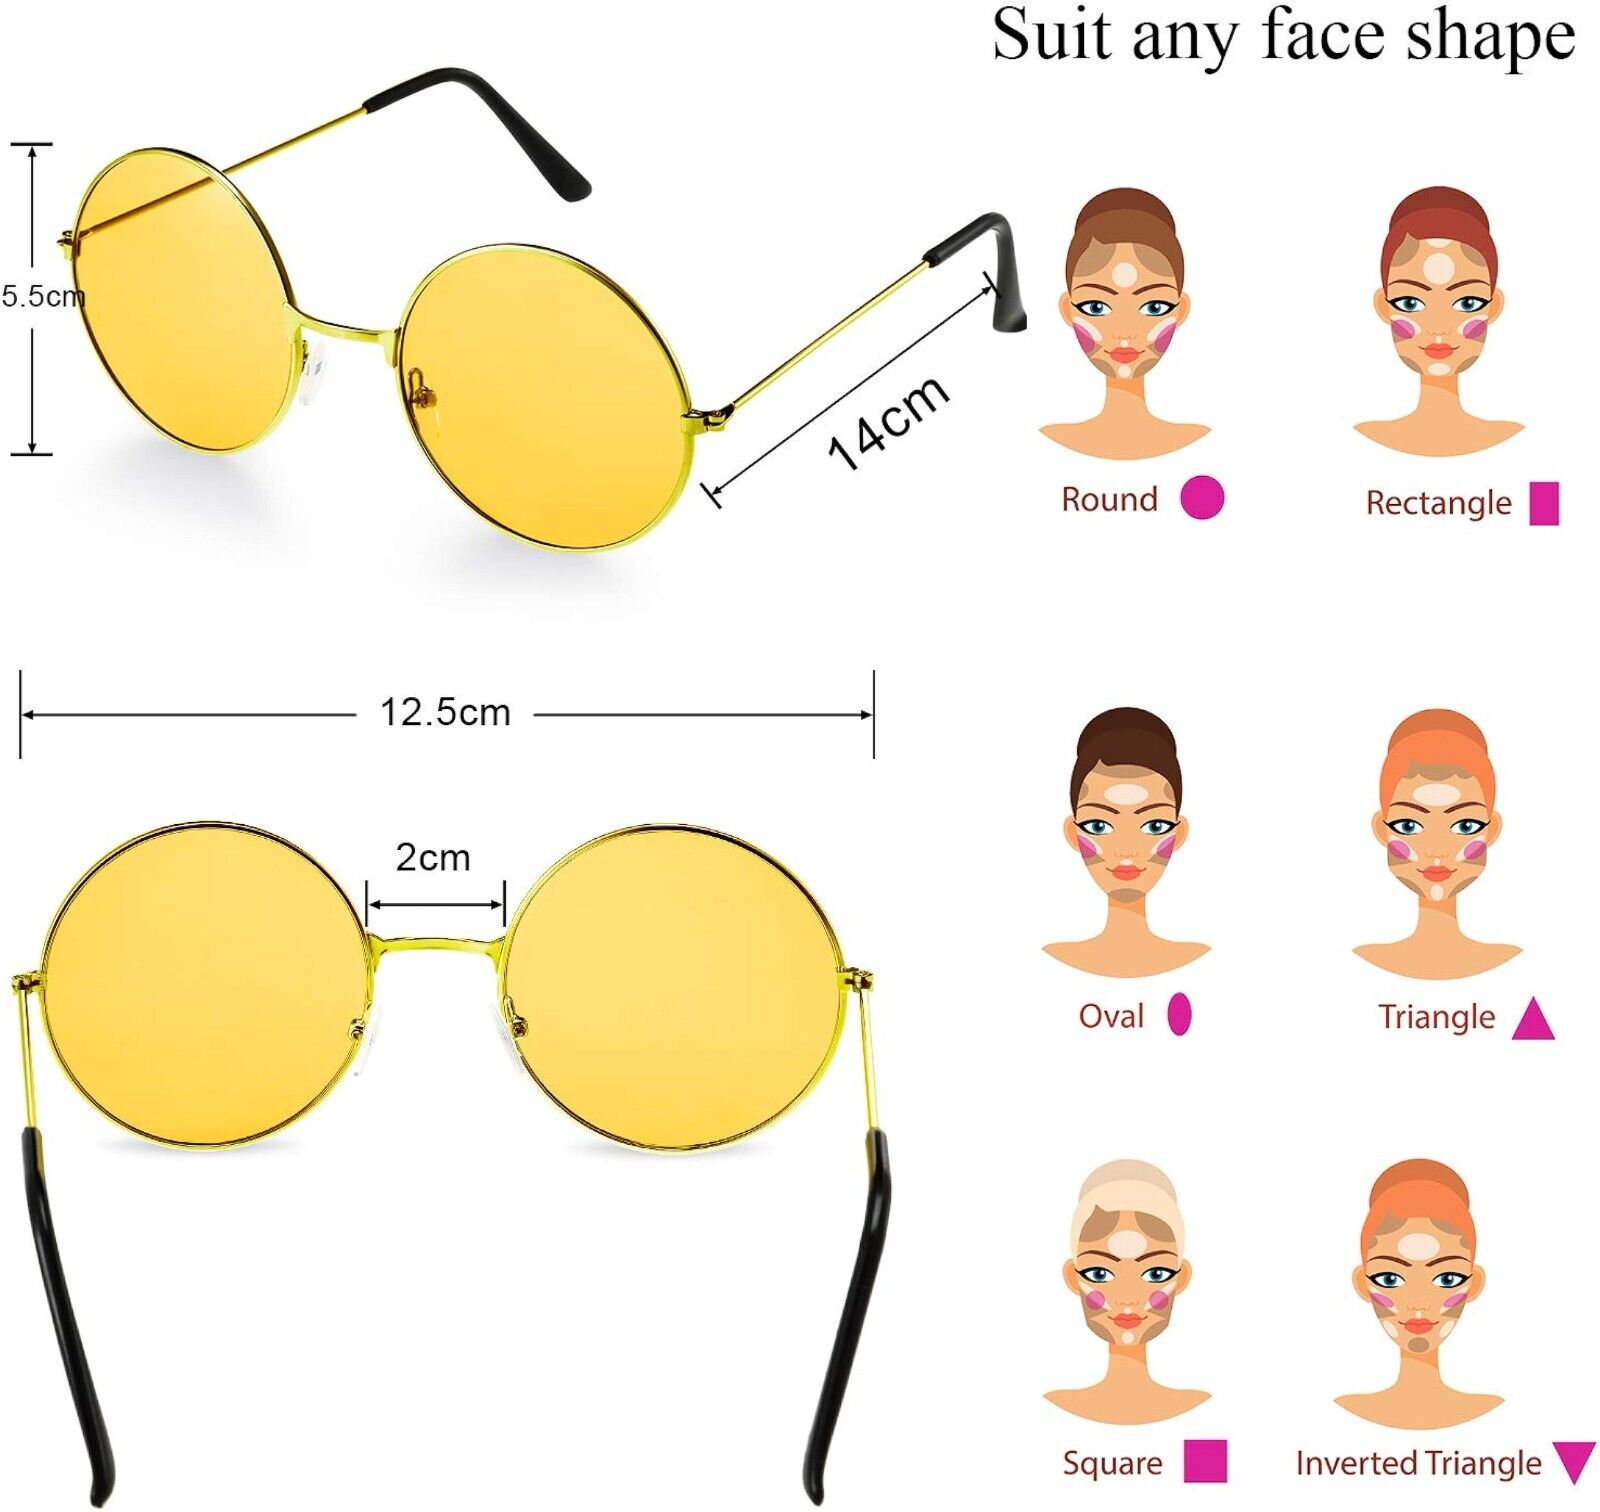 2x Retro Vintage Sonnenbrille rund Hippie Brille für Herren Damen Sonnenbrillen